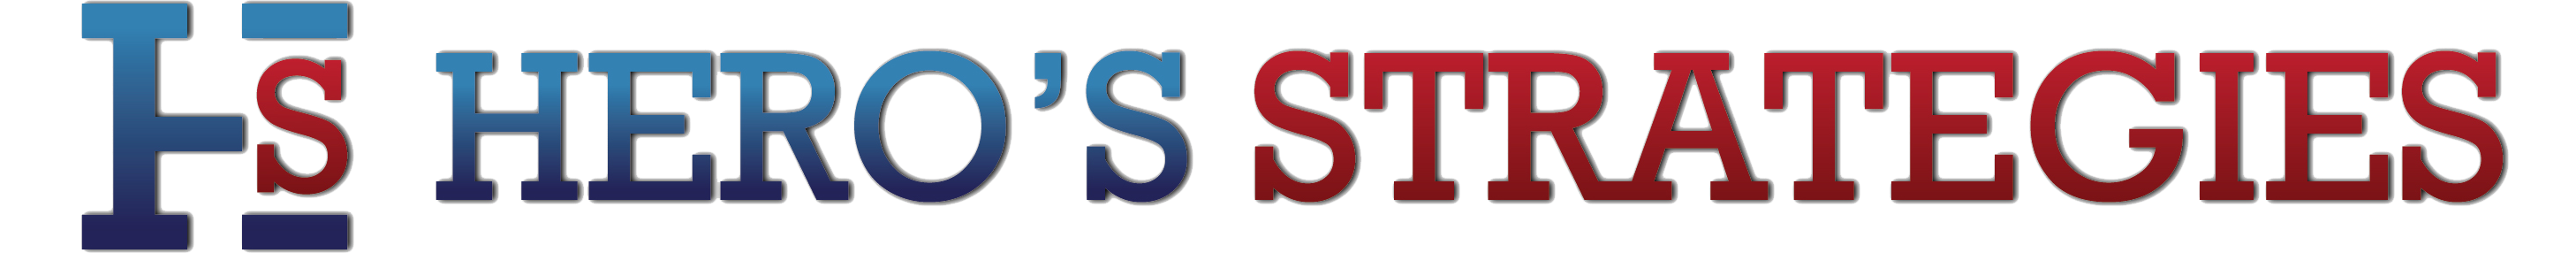 HS Logo Final 01